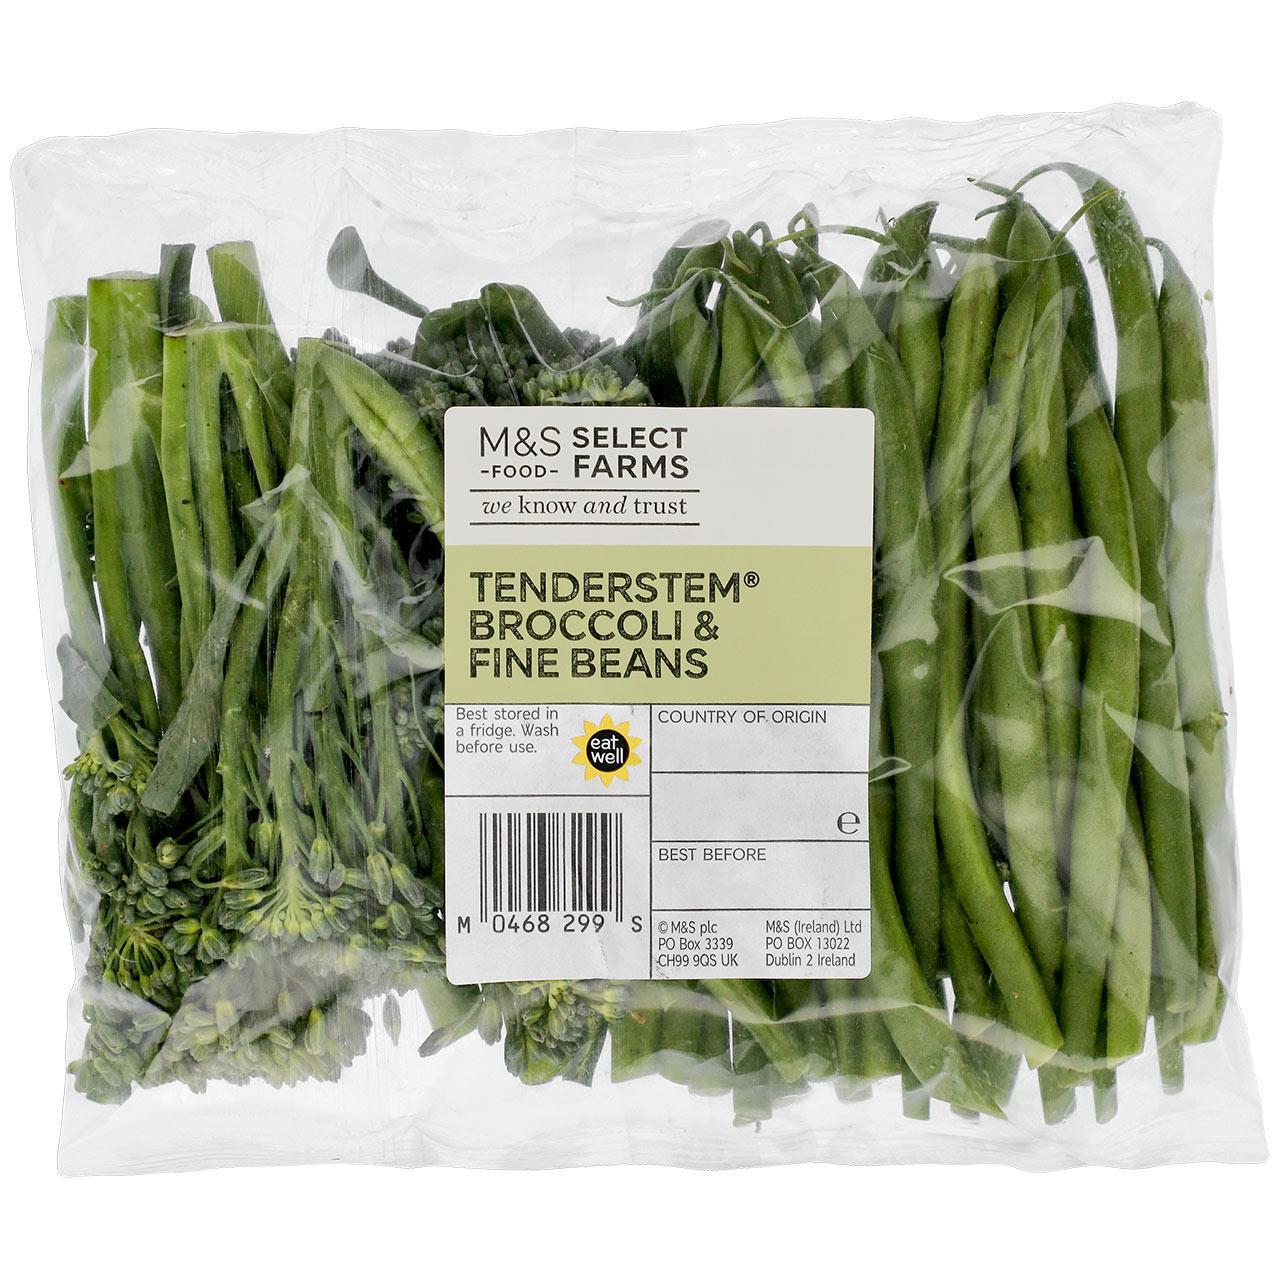 M&S Tenderstem Broccoli & Fine Beans 400g